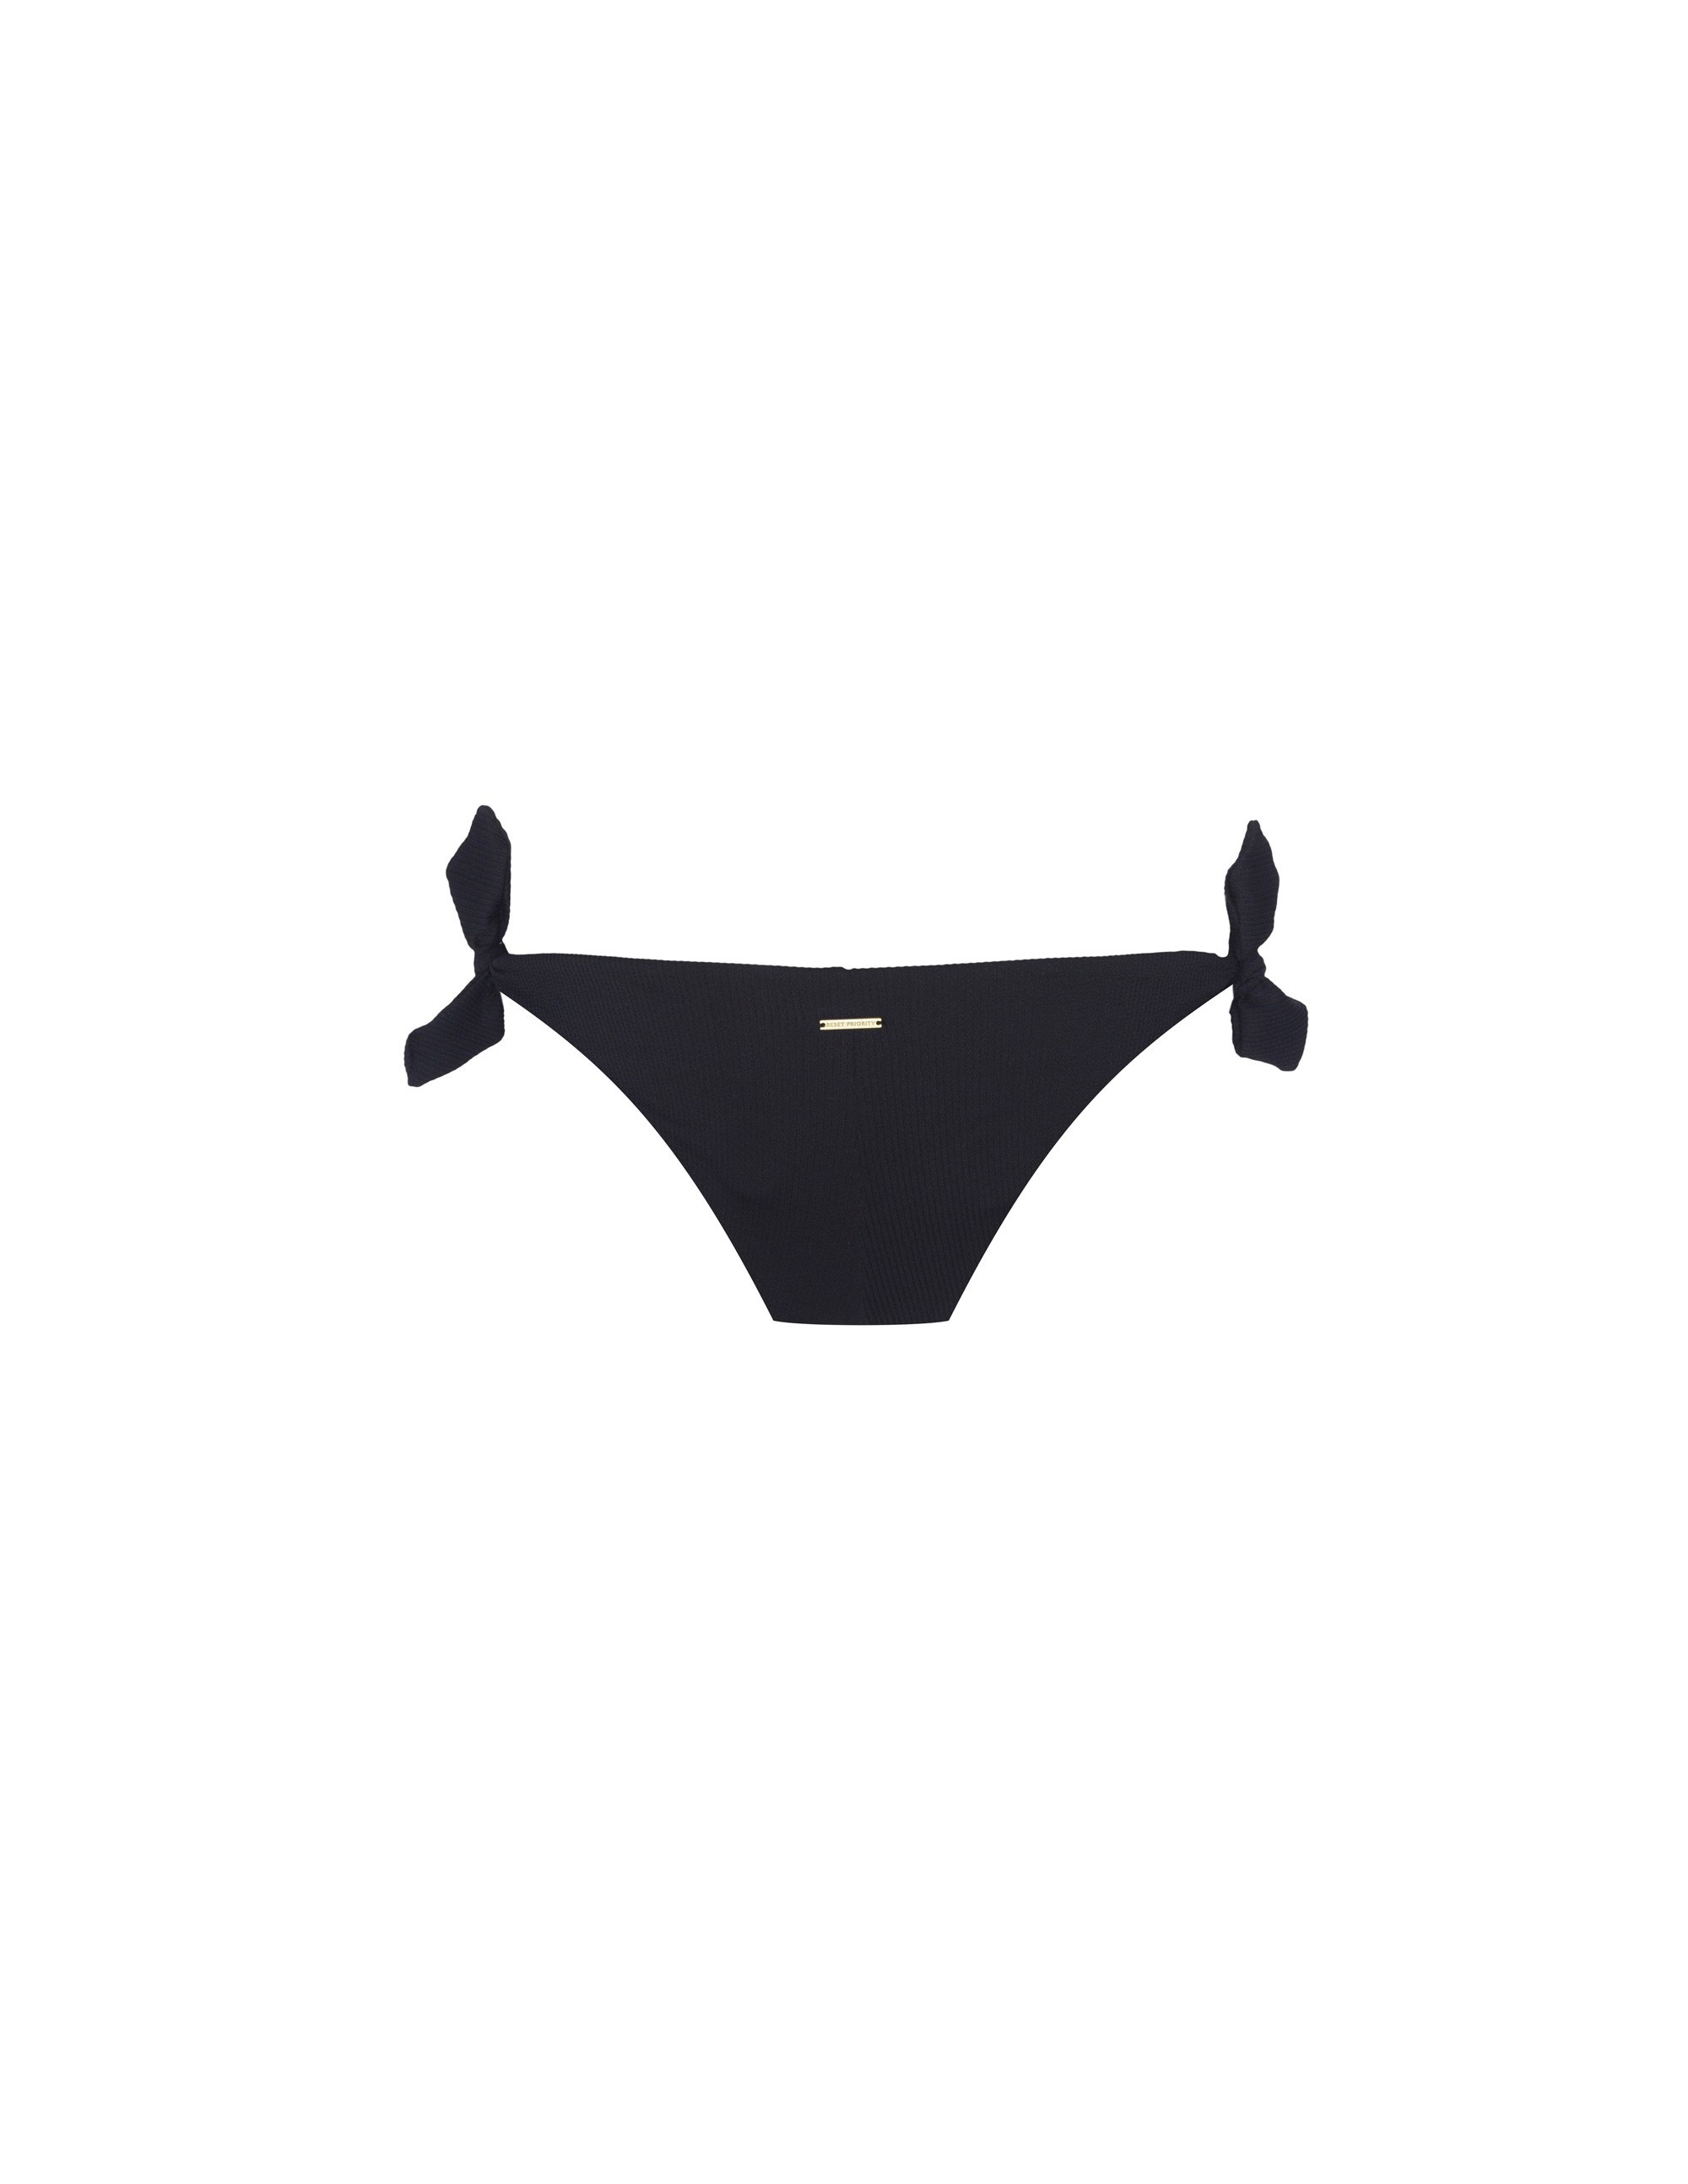 MISALI bikini bottom - PANTHER